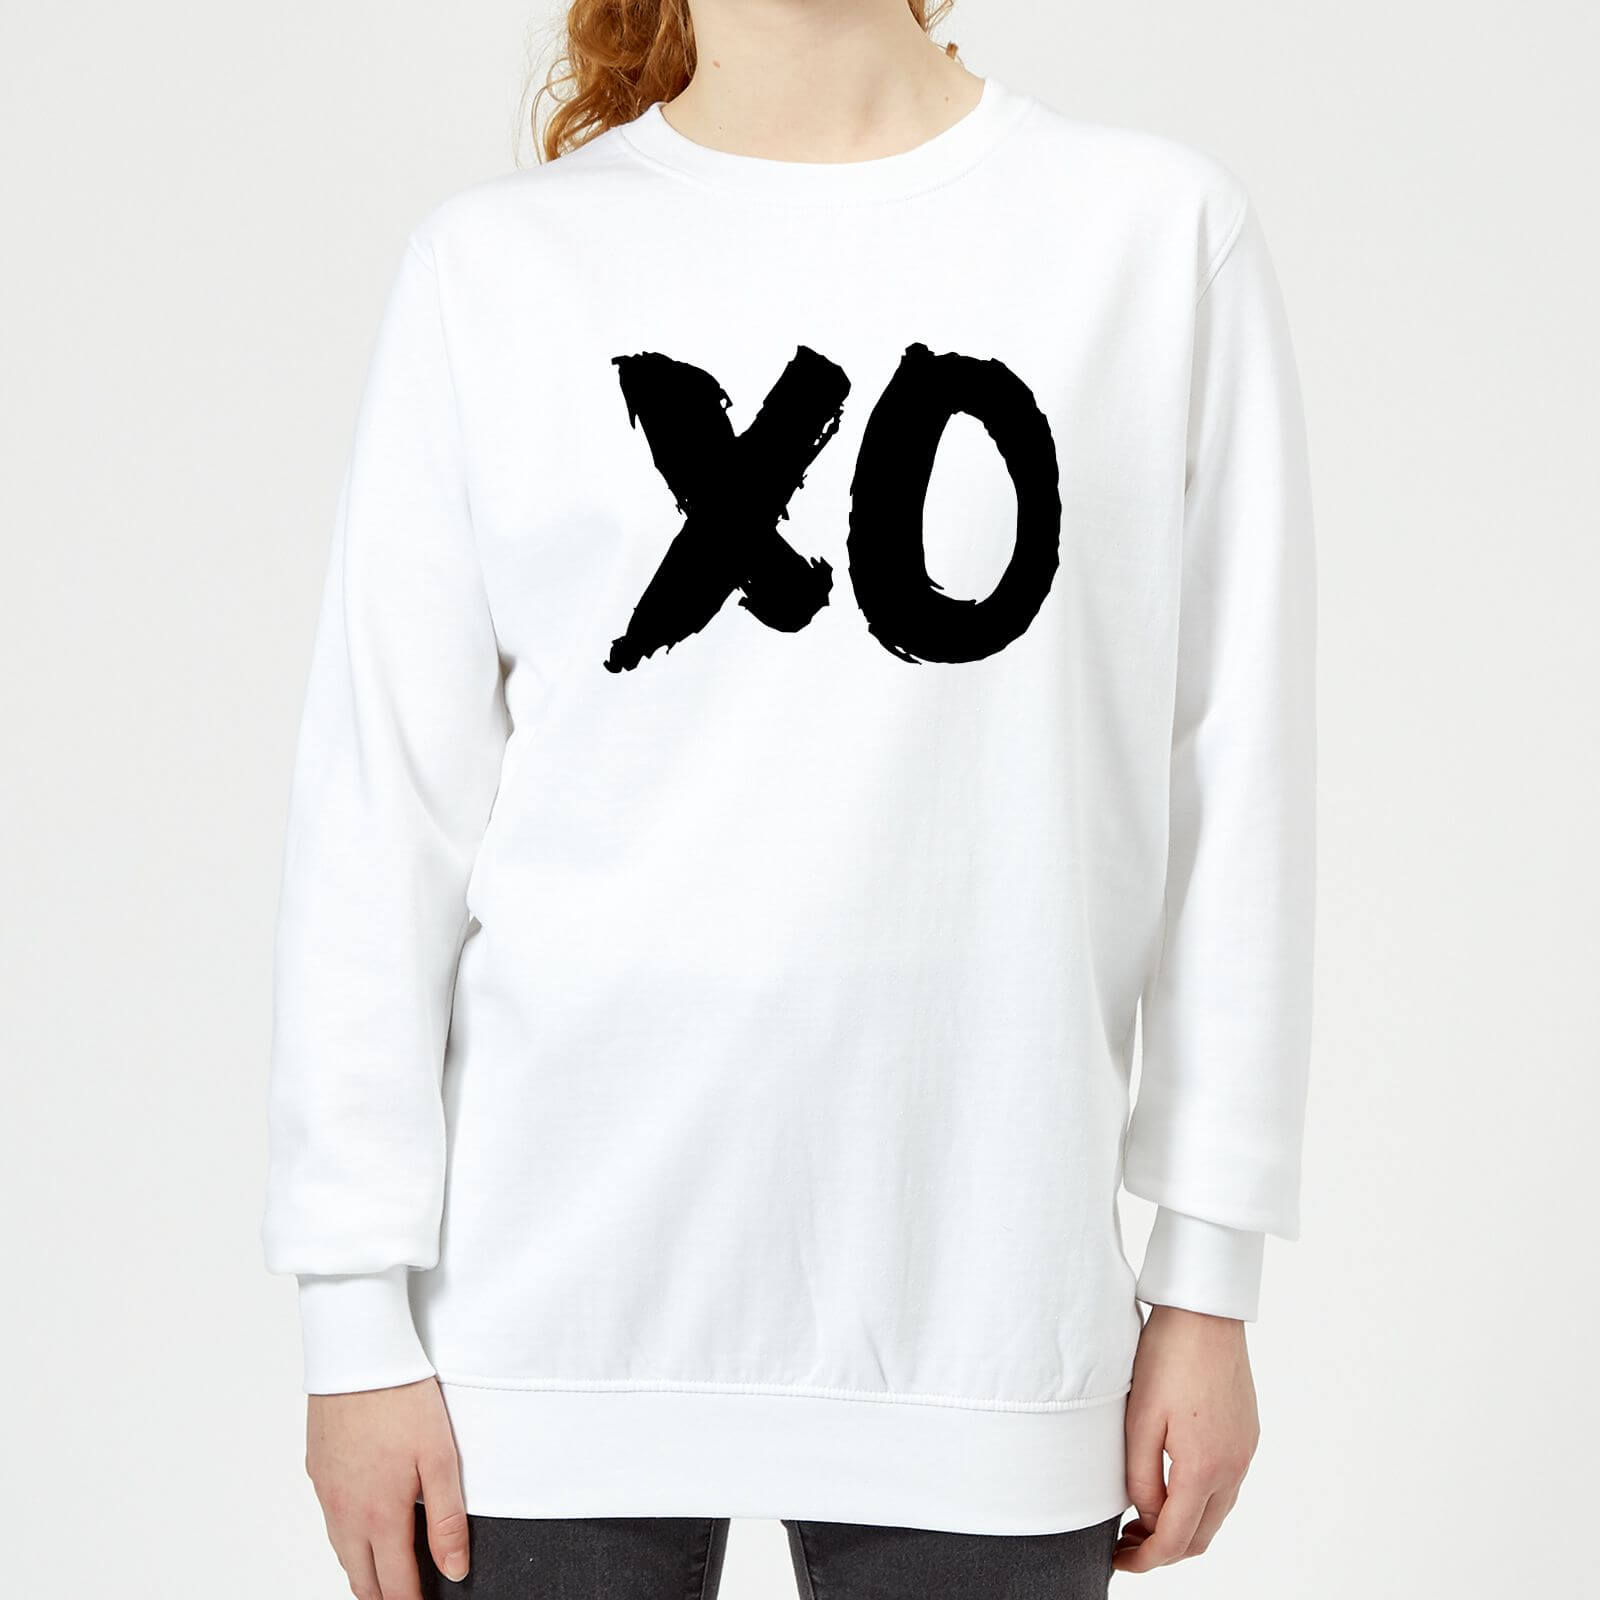 The Motivated Type XO Women's Sweatshirt - White - XS - White